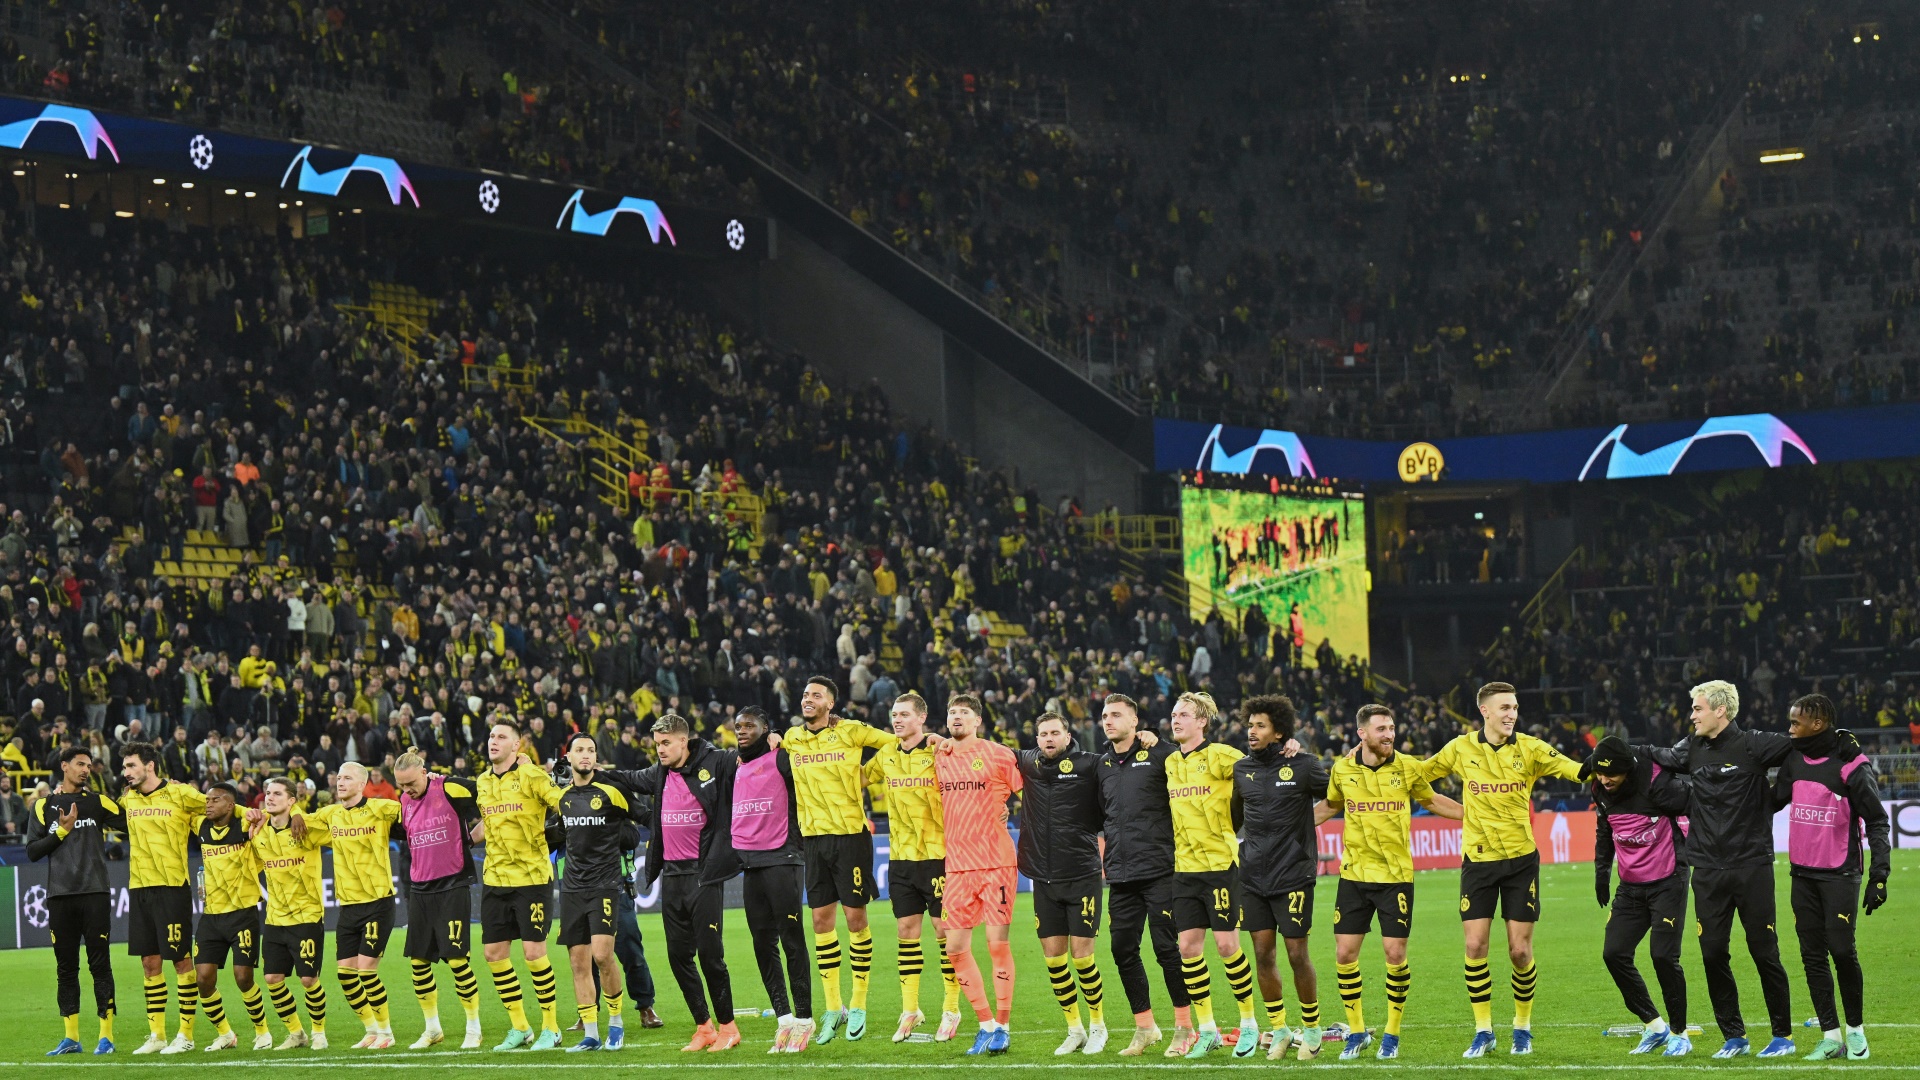 Die BVB-Fans feiern ihr Team nach dem Newcastle-Spiel